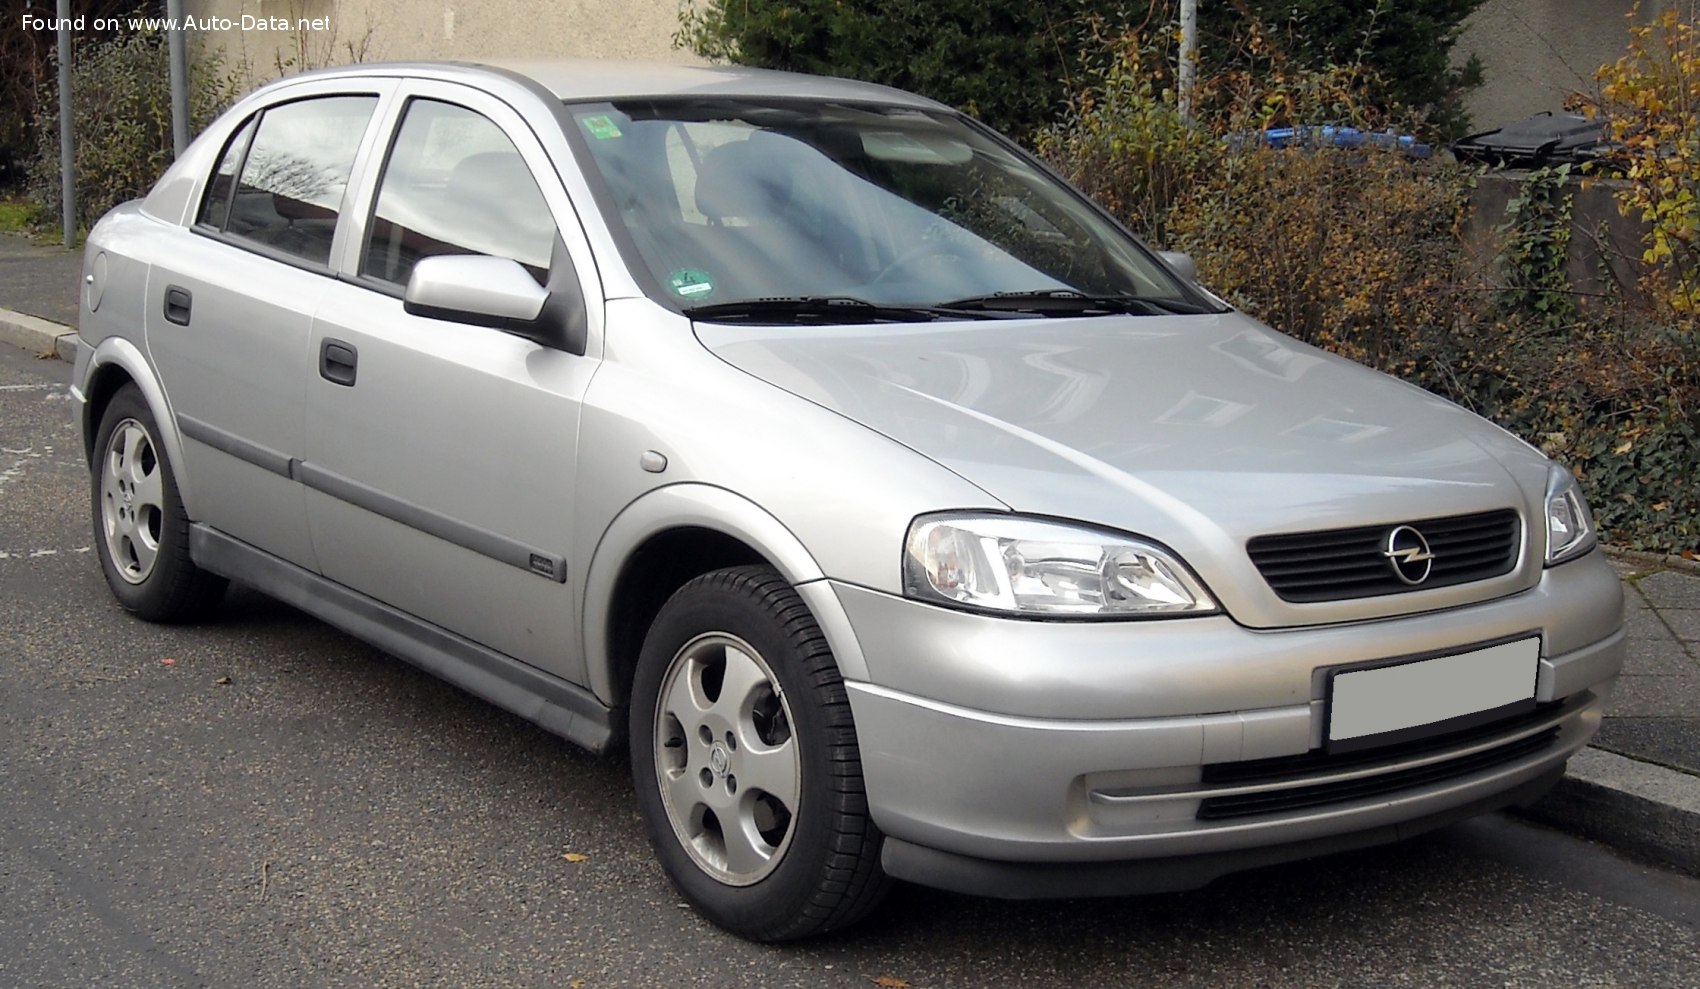 1998 Opel Astra G 1.6 Ecotec 16V (101 Hp)  Technical specs, data, fuel  consumption, Dimensions